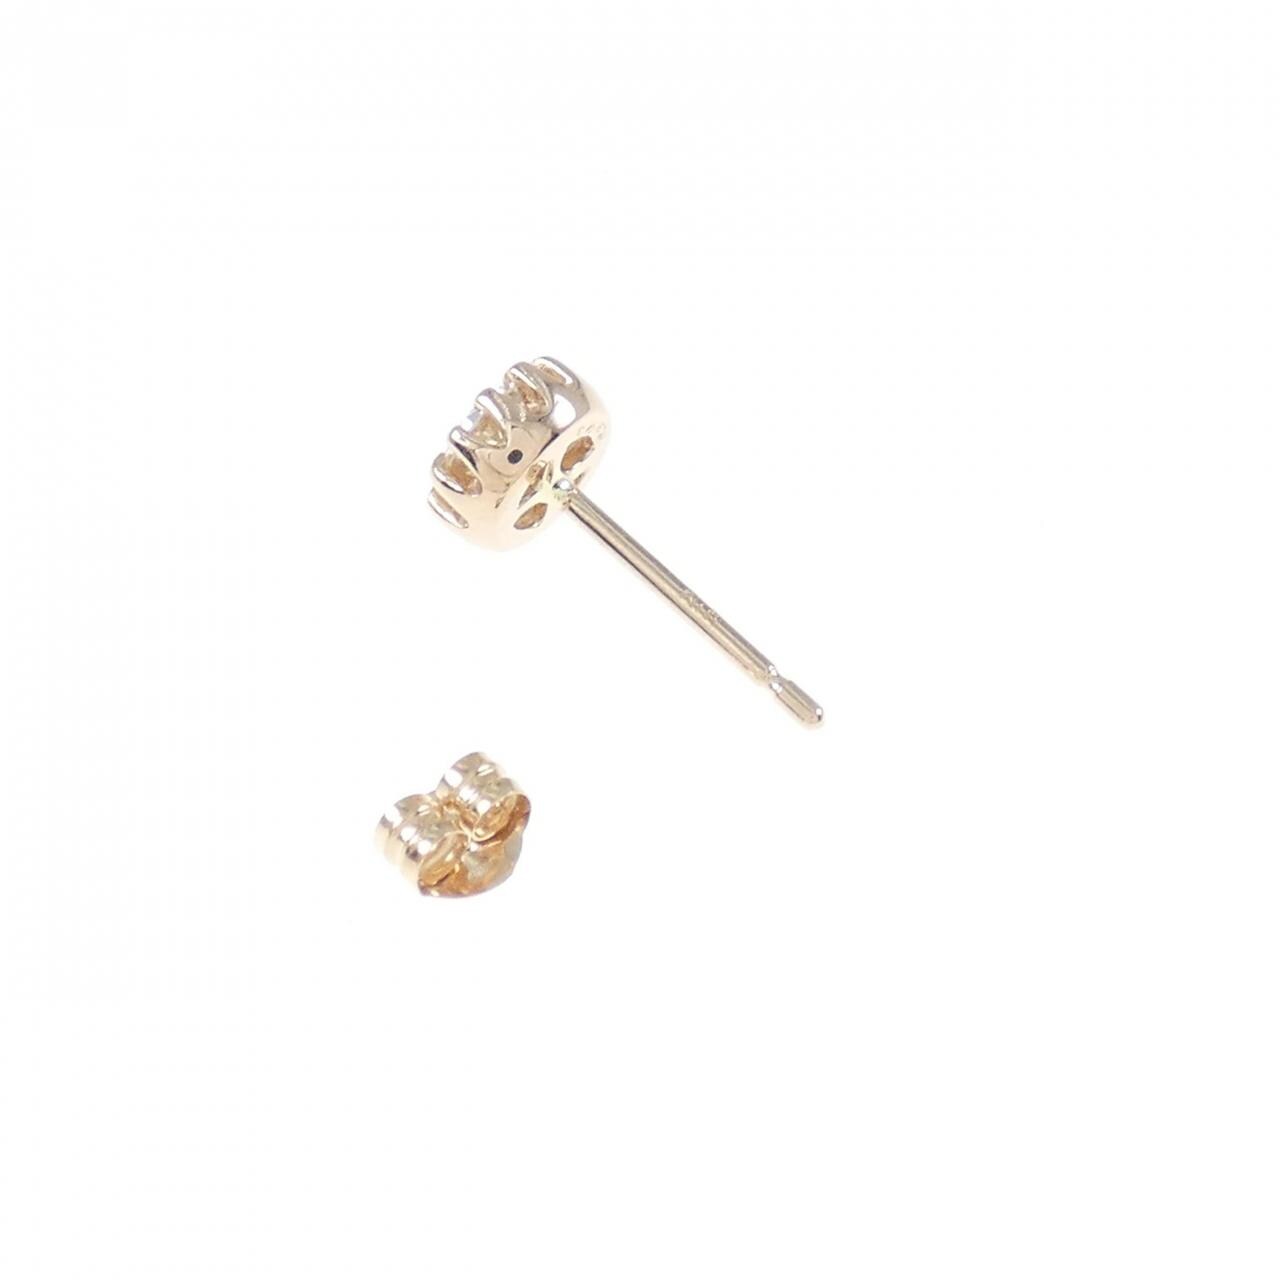 K18PG Diamond Earrings 0.303CT One Ear